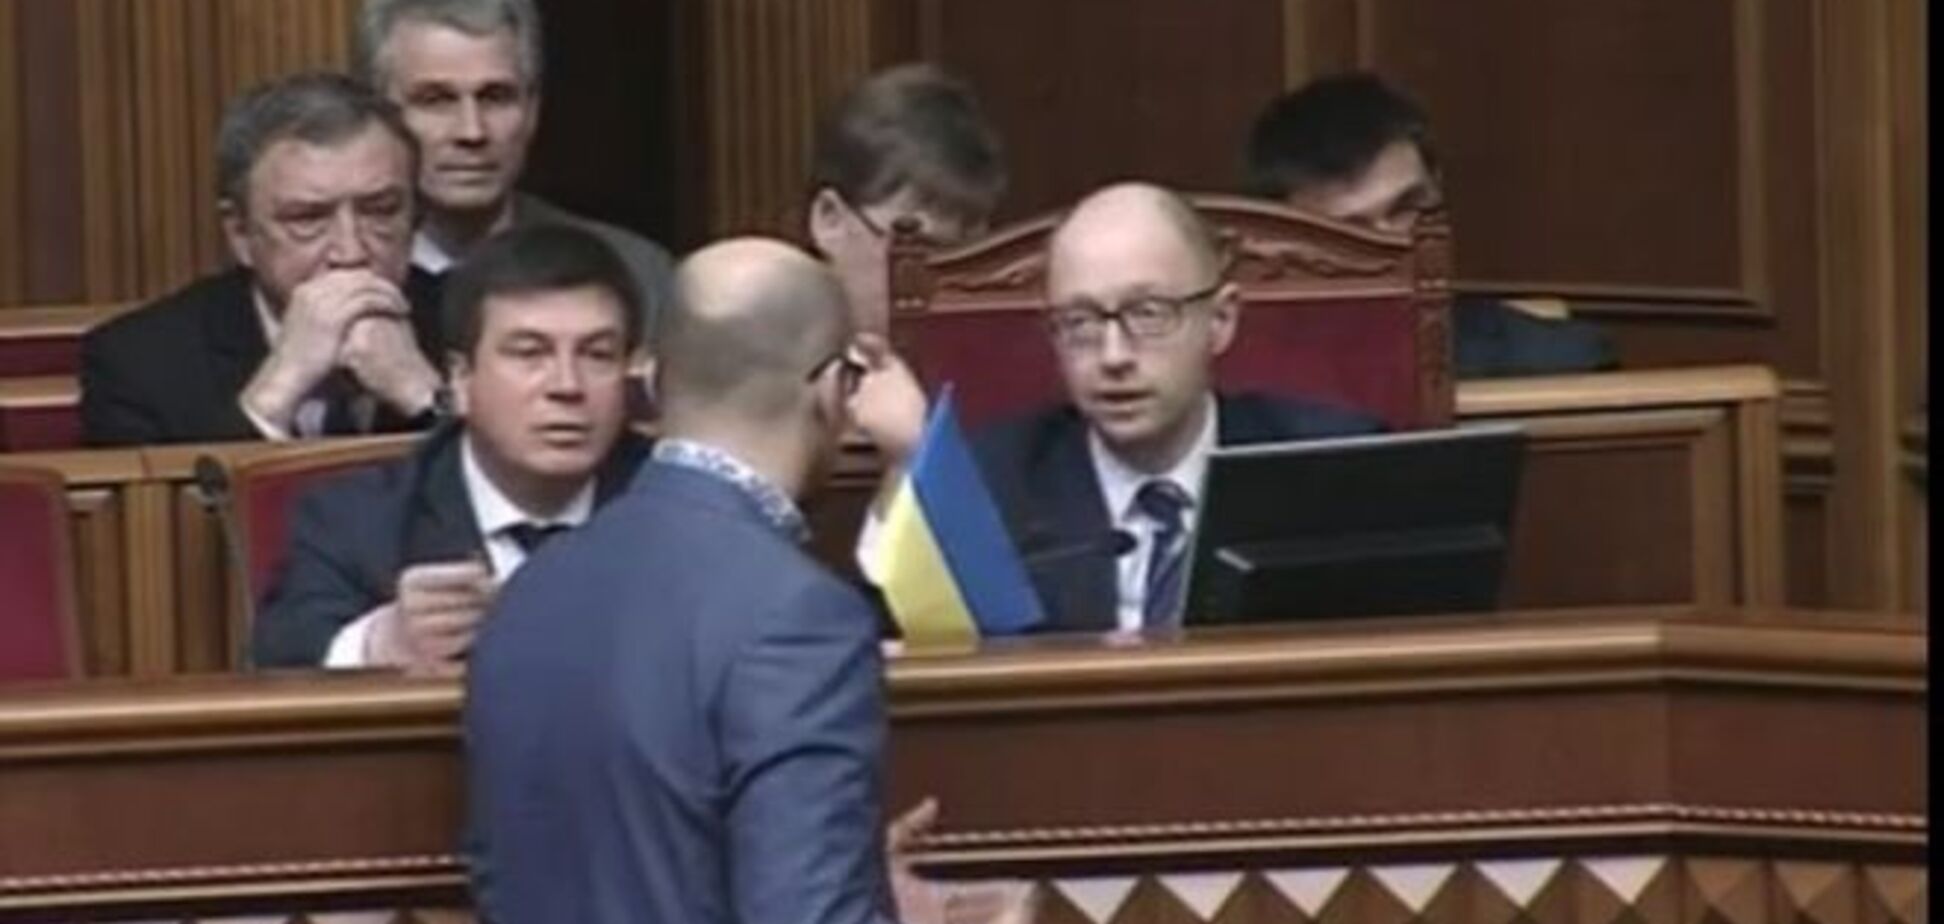 Я буду гордо флаг нести: Яценюк 'послал' нардепа, спросившего об отставке. Видеофакт